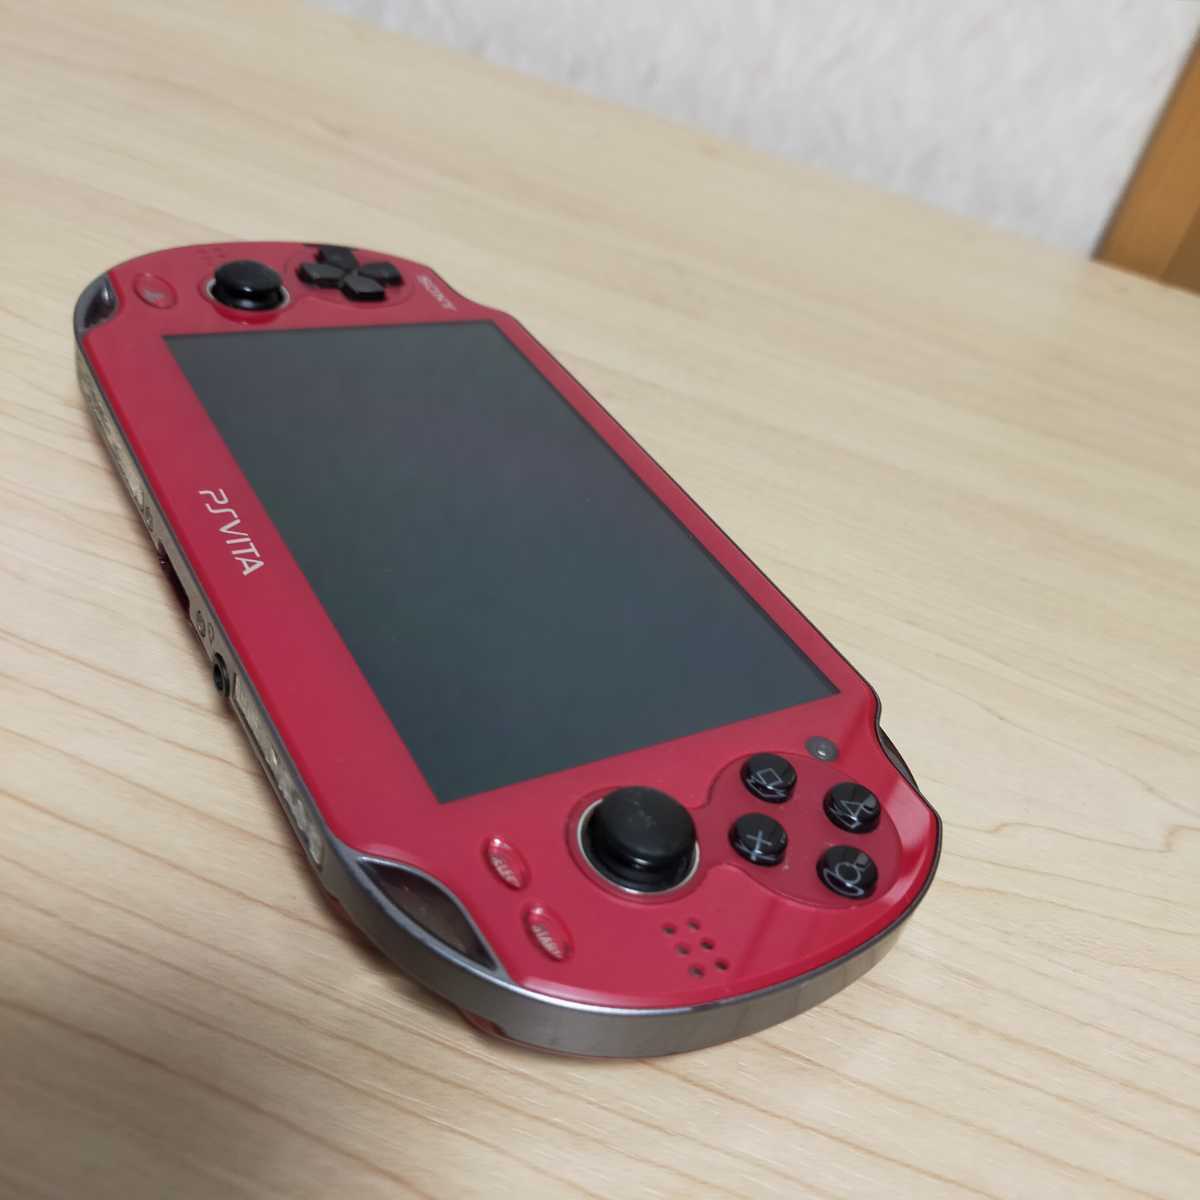 送料無料 SONY PS Vita PCH-1000 Wi-Fiモデル コズミックレッド Play station cosmic red 3G ソニー  メモリーカード 4GB付 動作確認済